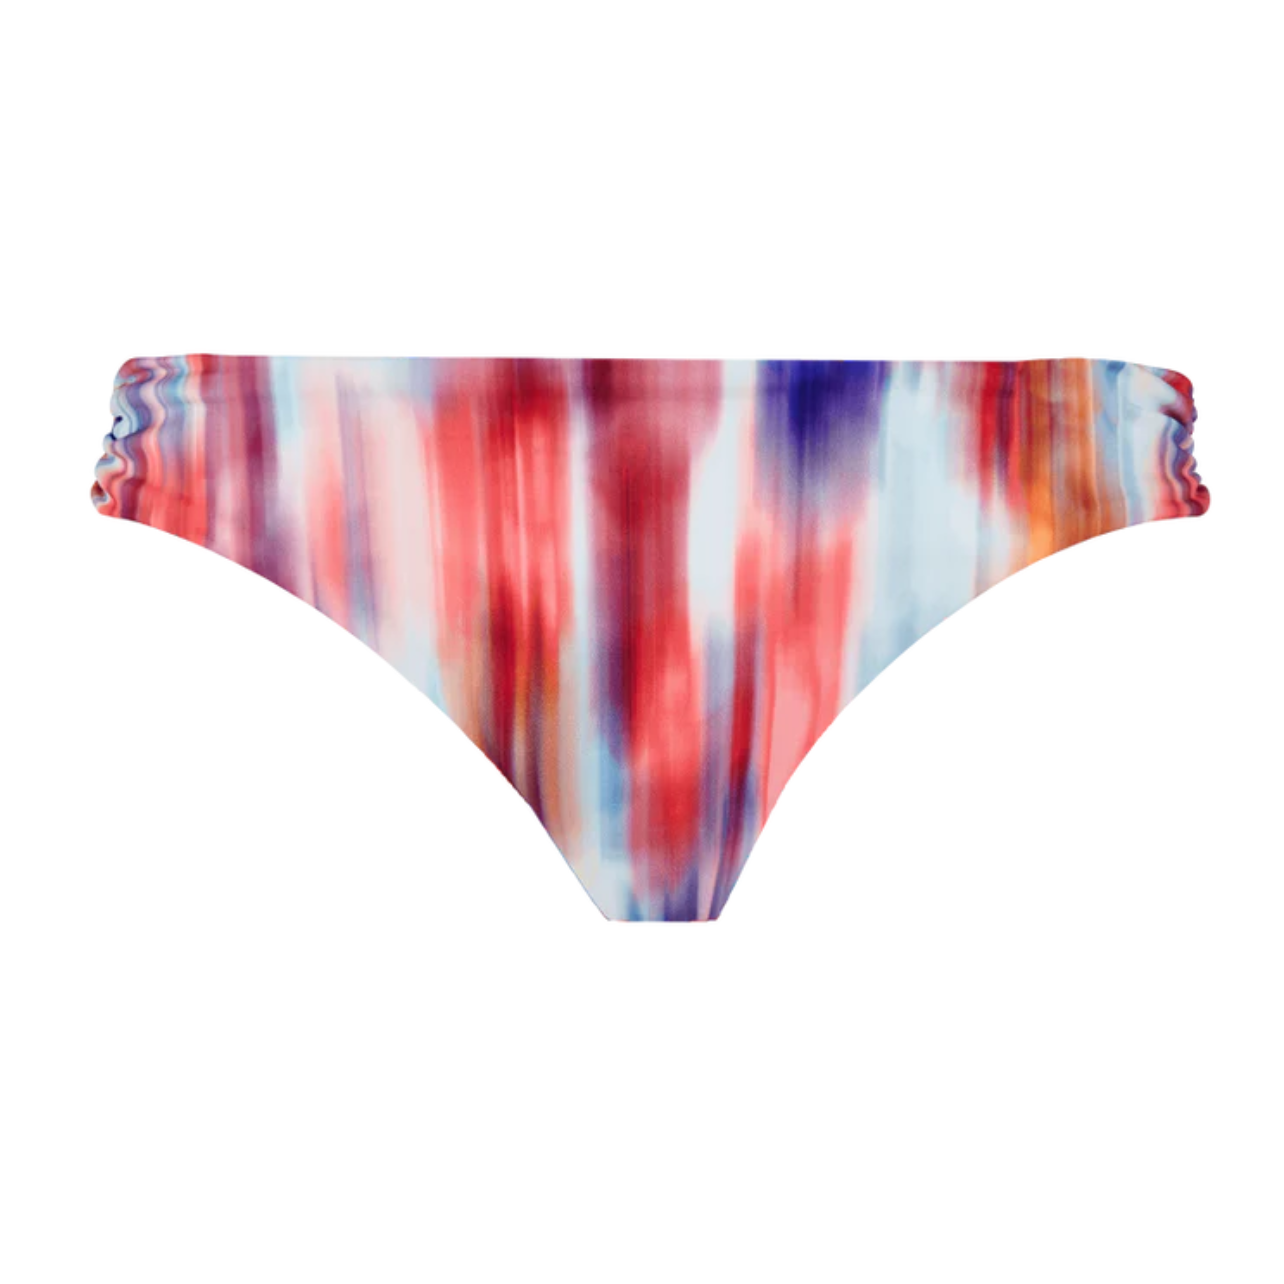 Vilebrequin women’s multi color brief bikini bottom